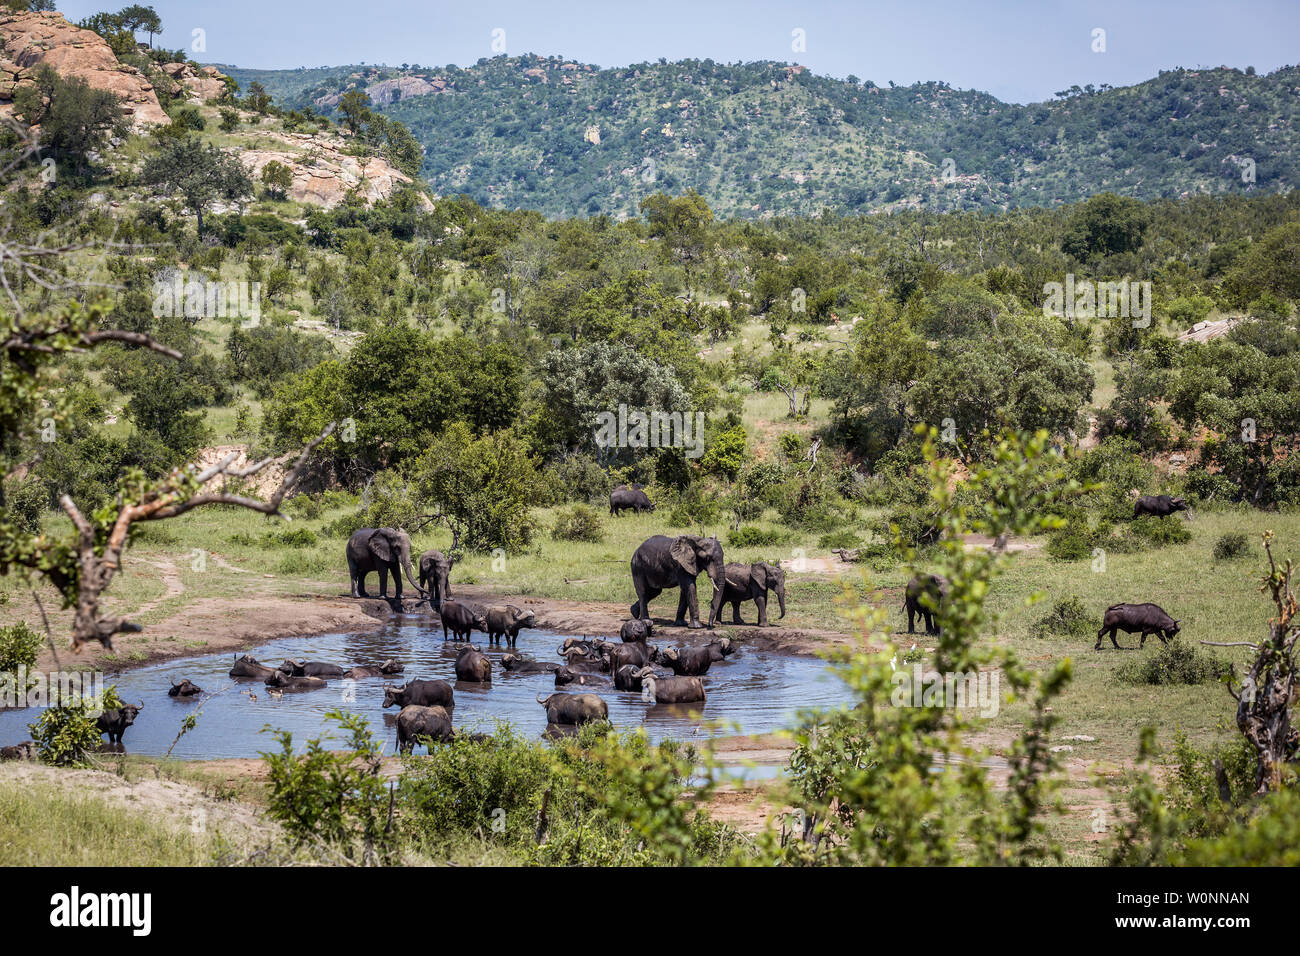 Bush africain et de l'éléphant d'Afrique à l'eau dans le parc national Kruger, Afrique du Sud ; espèce de la famille des Elephantidae Loxodonta africana Banque D'Images